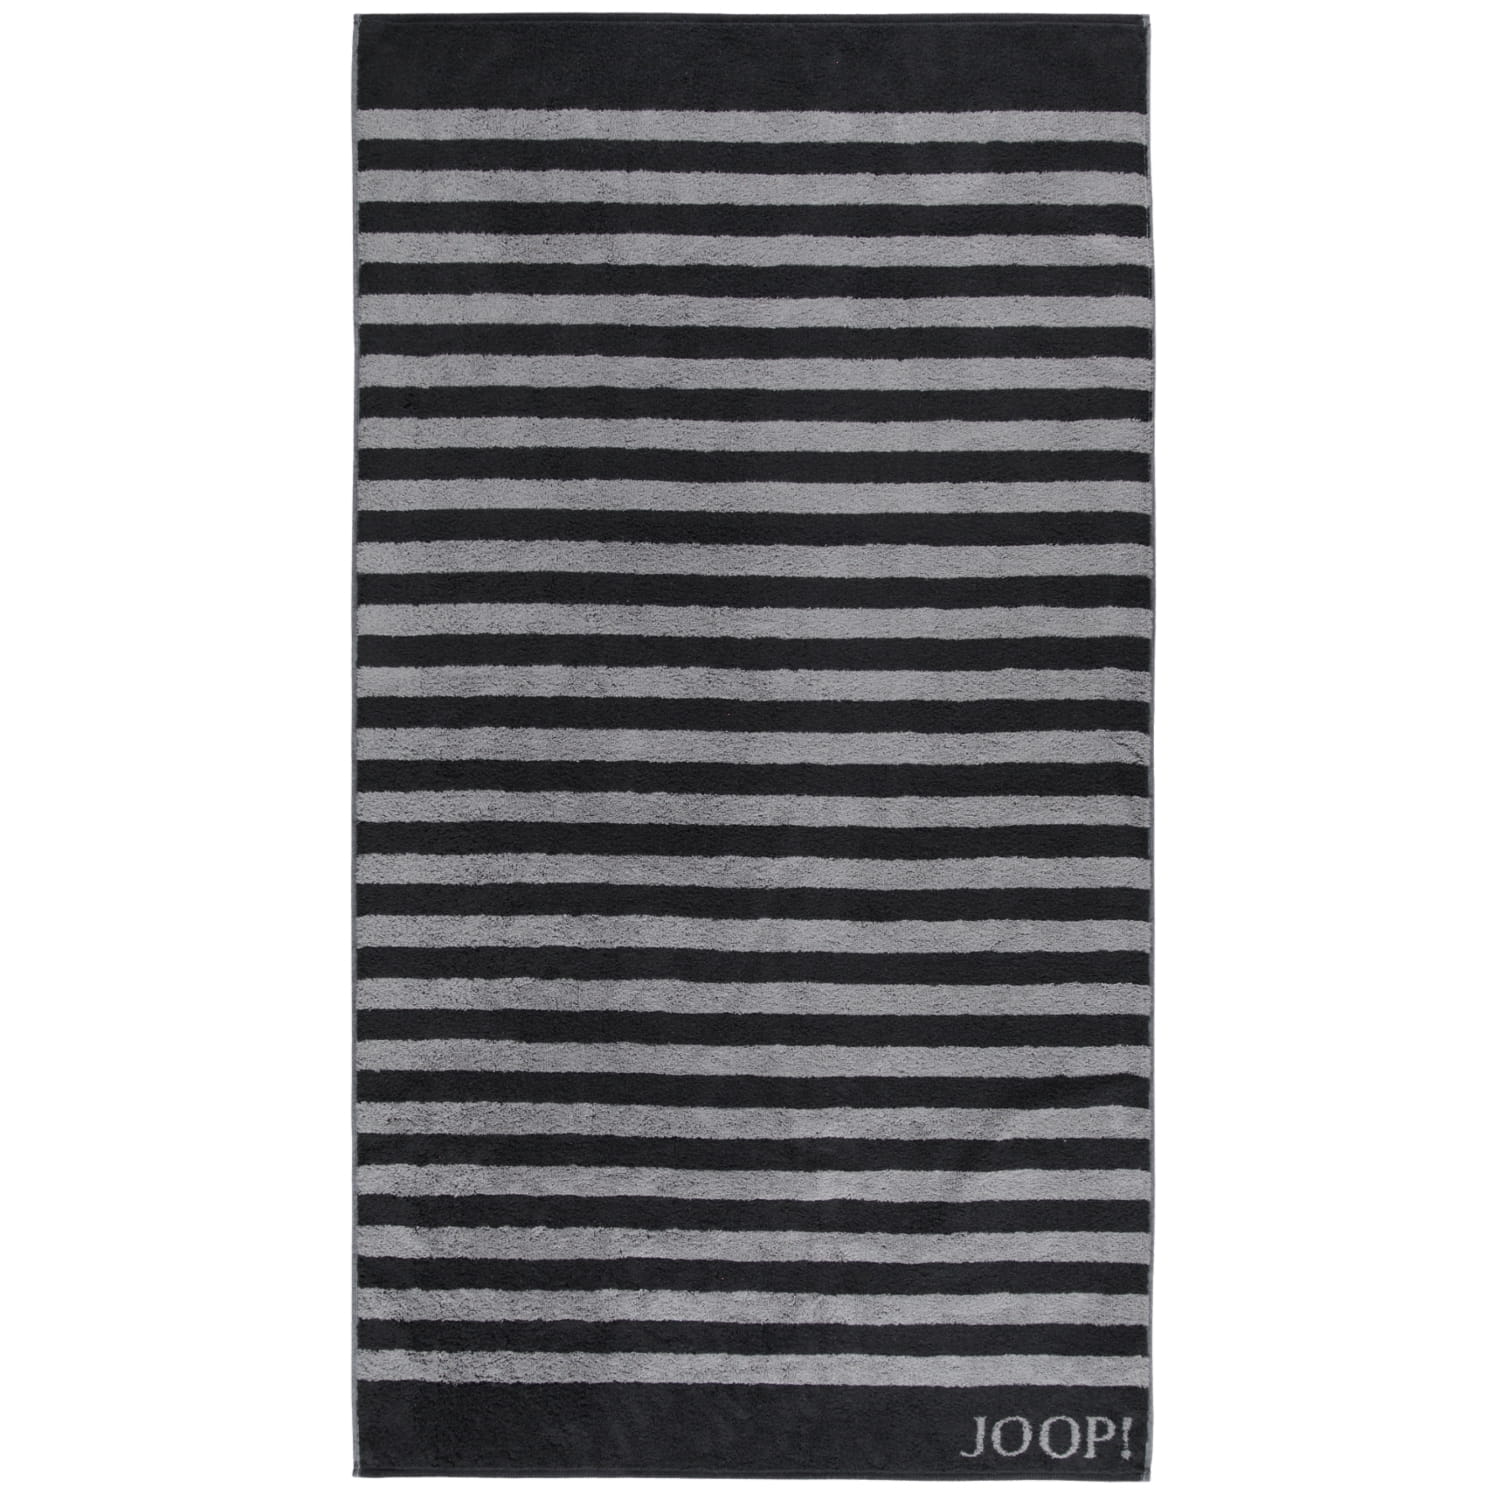 JOOP! Classic - | JOOP! cm Schwarz Marken - Duschtuch - Handtücher Stripes Farbe: | 80x150 - 1610 90 | JOOP